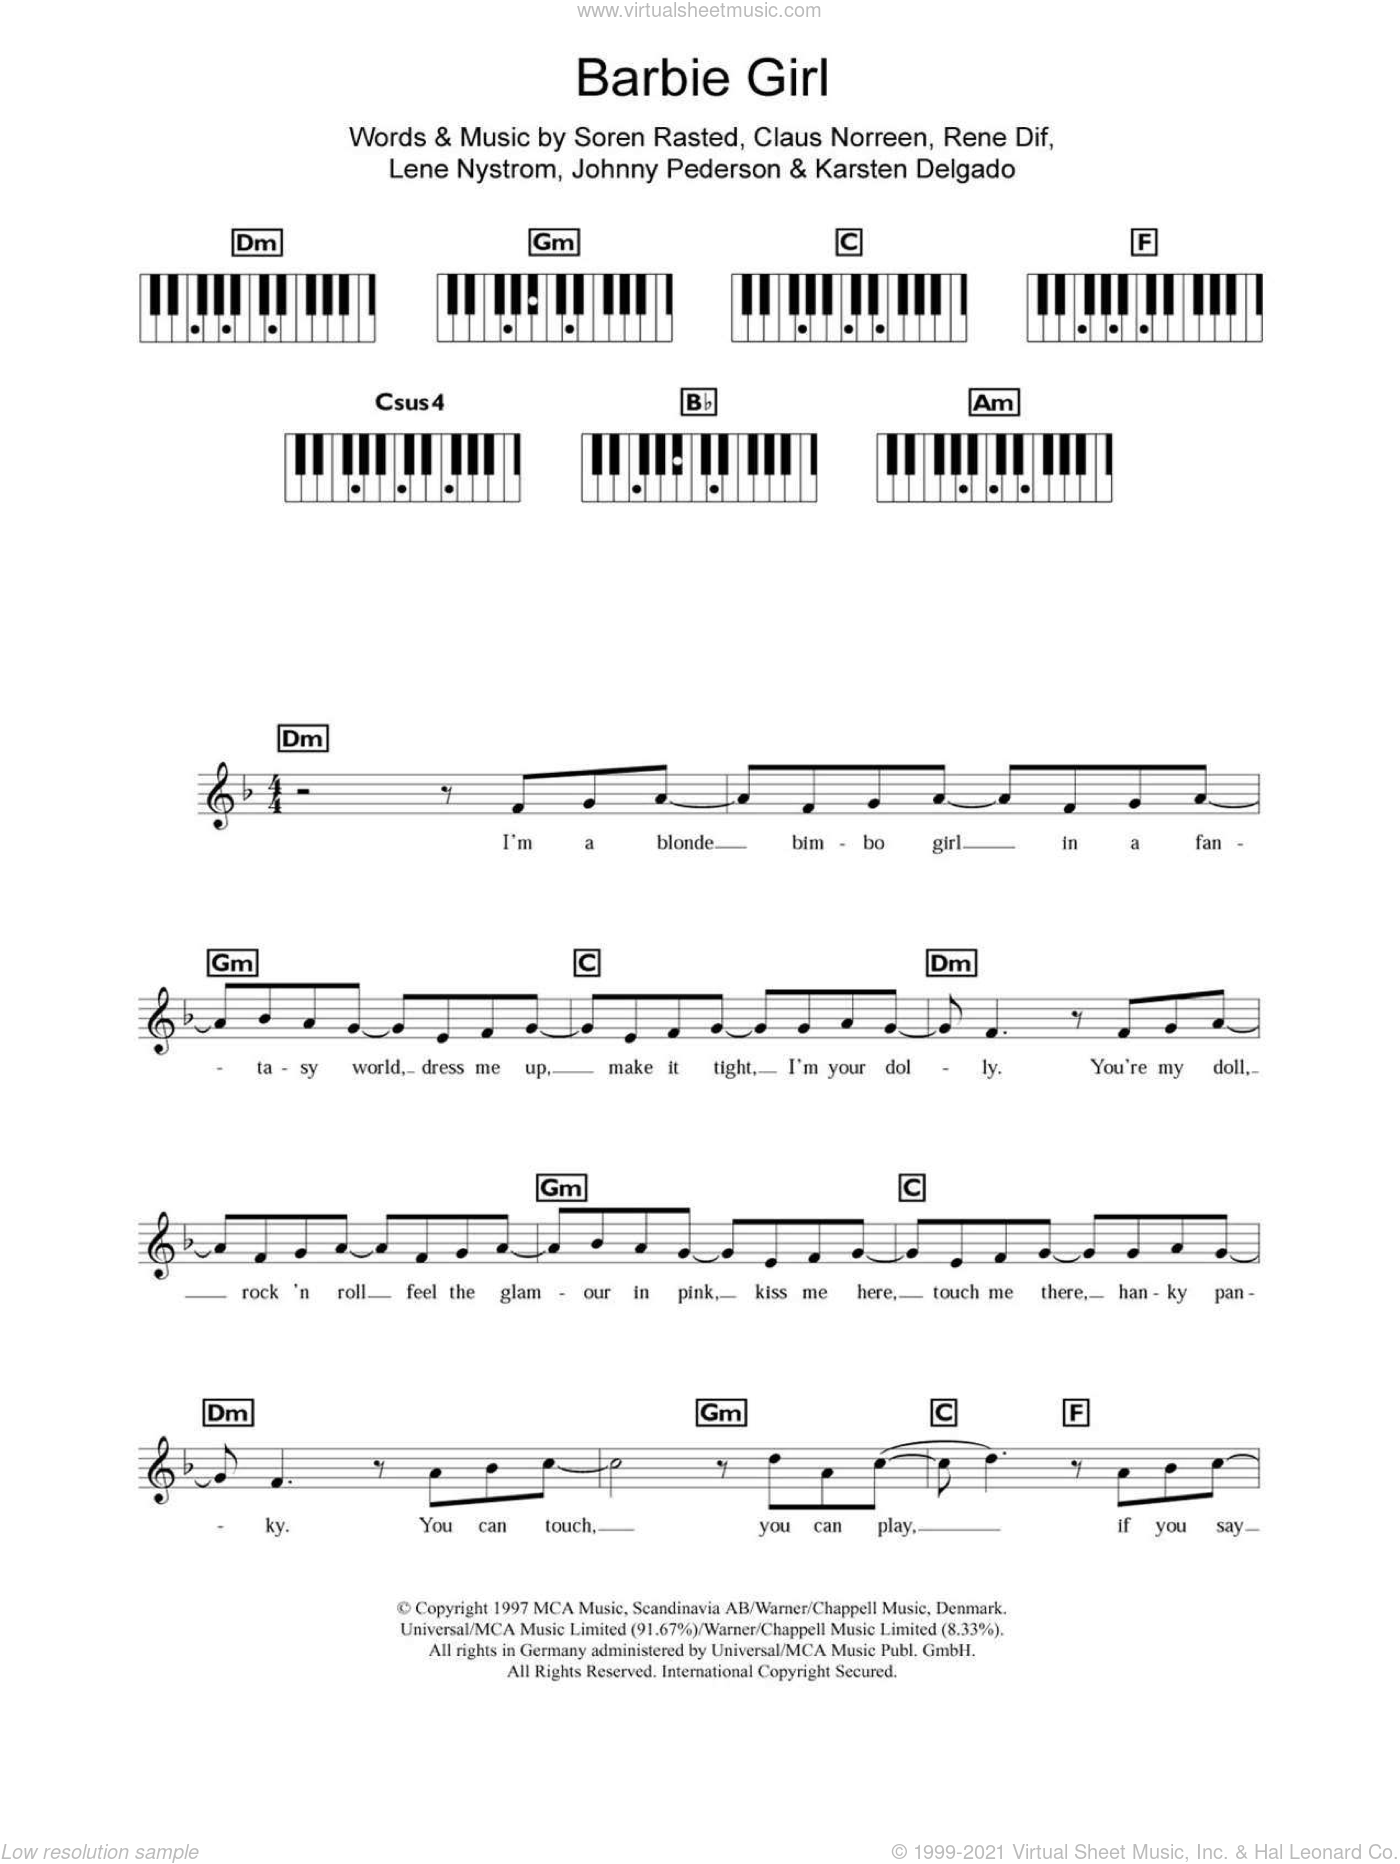 Aqua Barbie Girl Sheet Music For Piano Solo Chords Lyrics Melody - roblox piano sheets duet